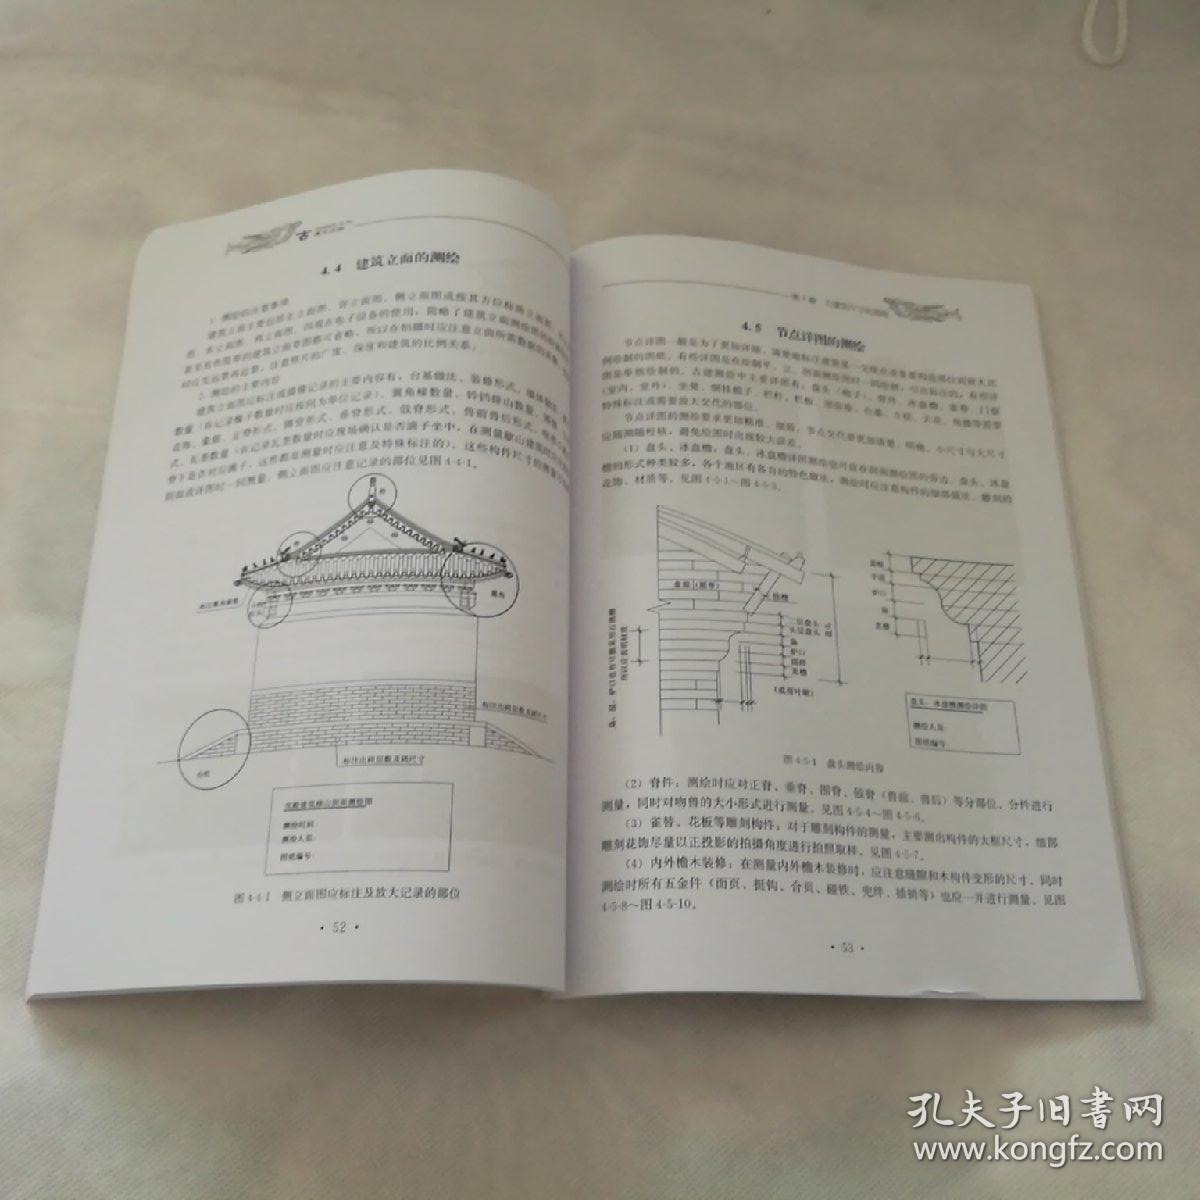 古建筑测绘·中国古建筑营造技术丛书